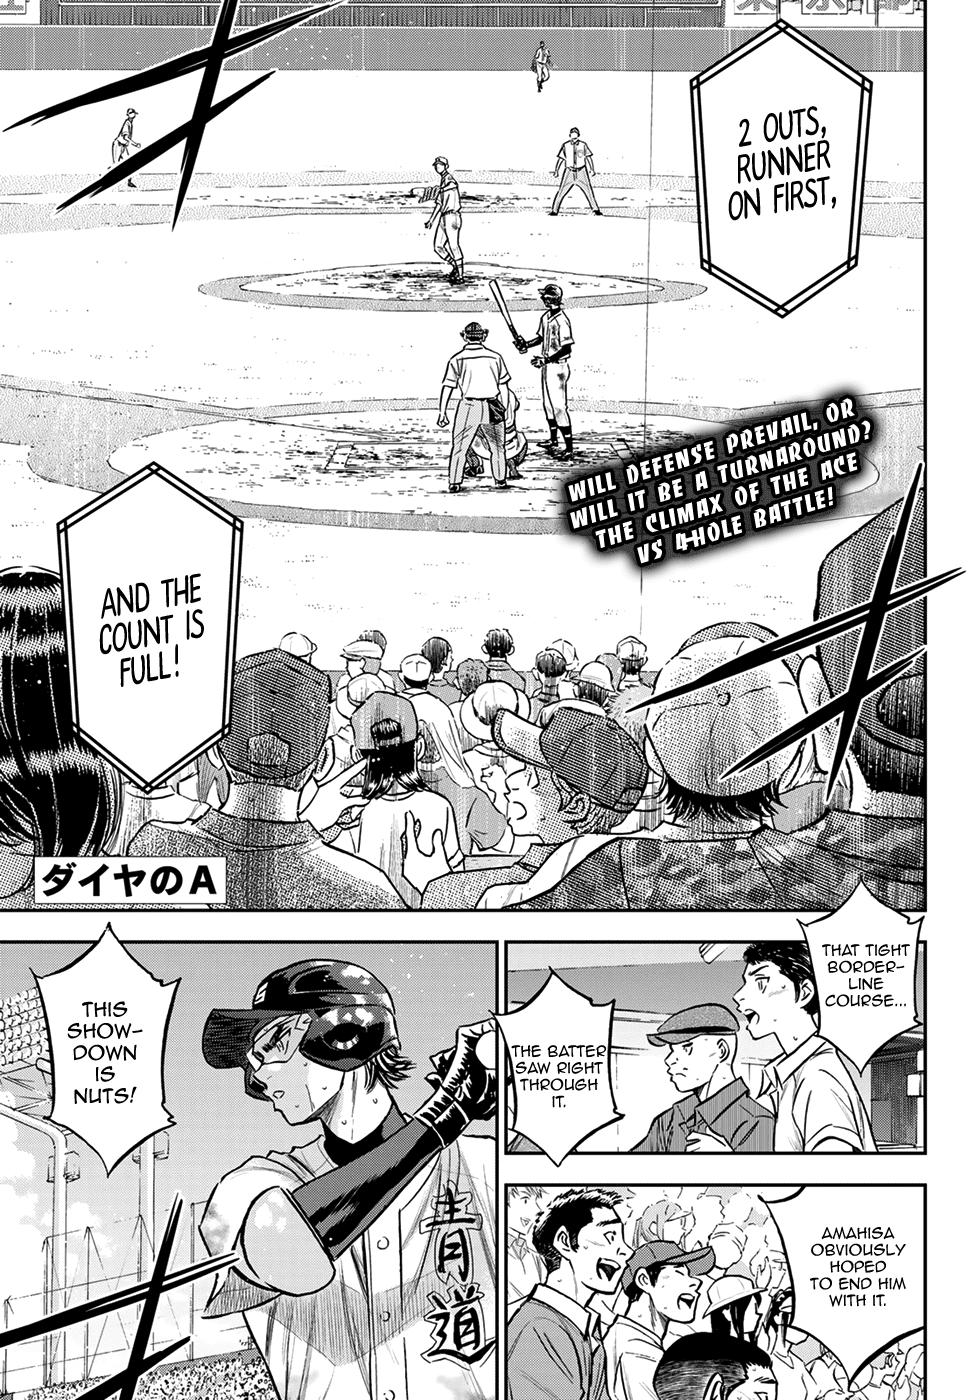 Read Daiya No A - Act Ii Chapter 304: Goddamn World on Mangakakalot